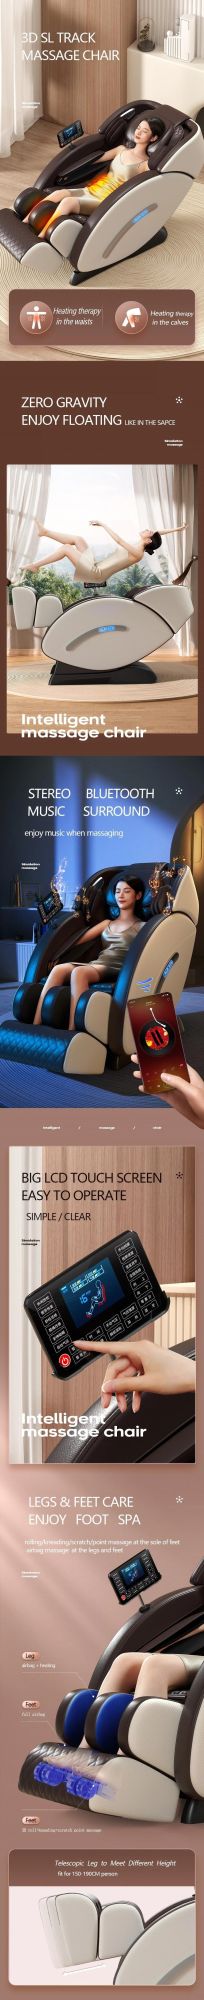 Sauron T100 3D Zero Gravity Full Body Foot Massager Massage Chair